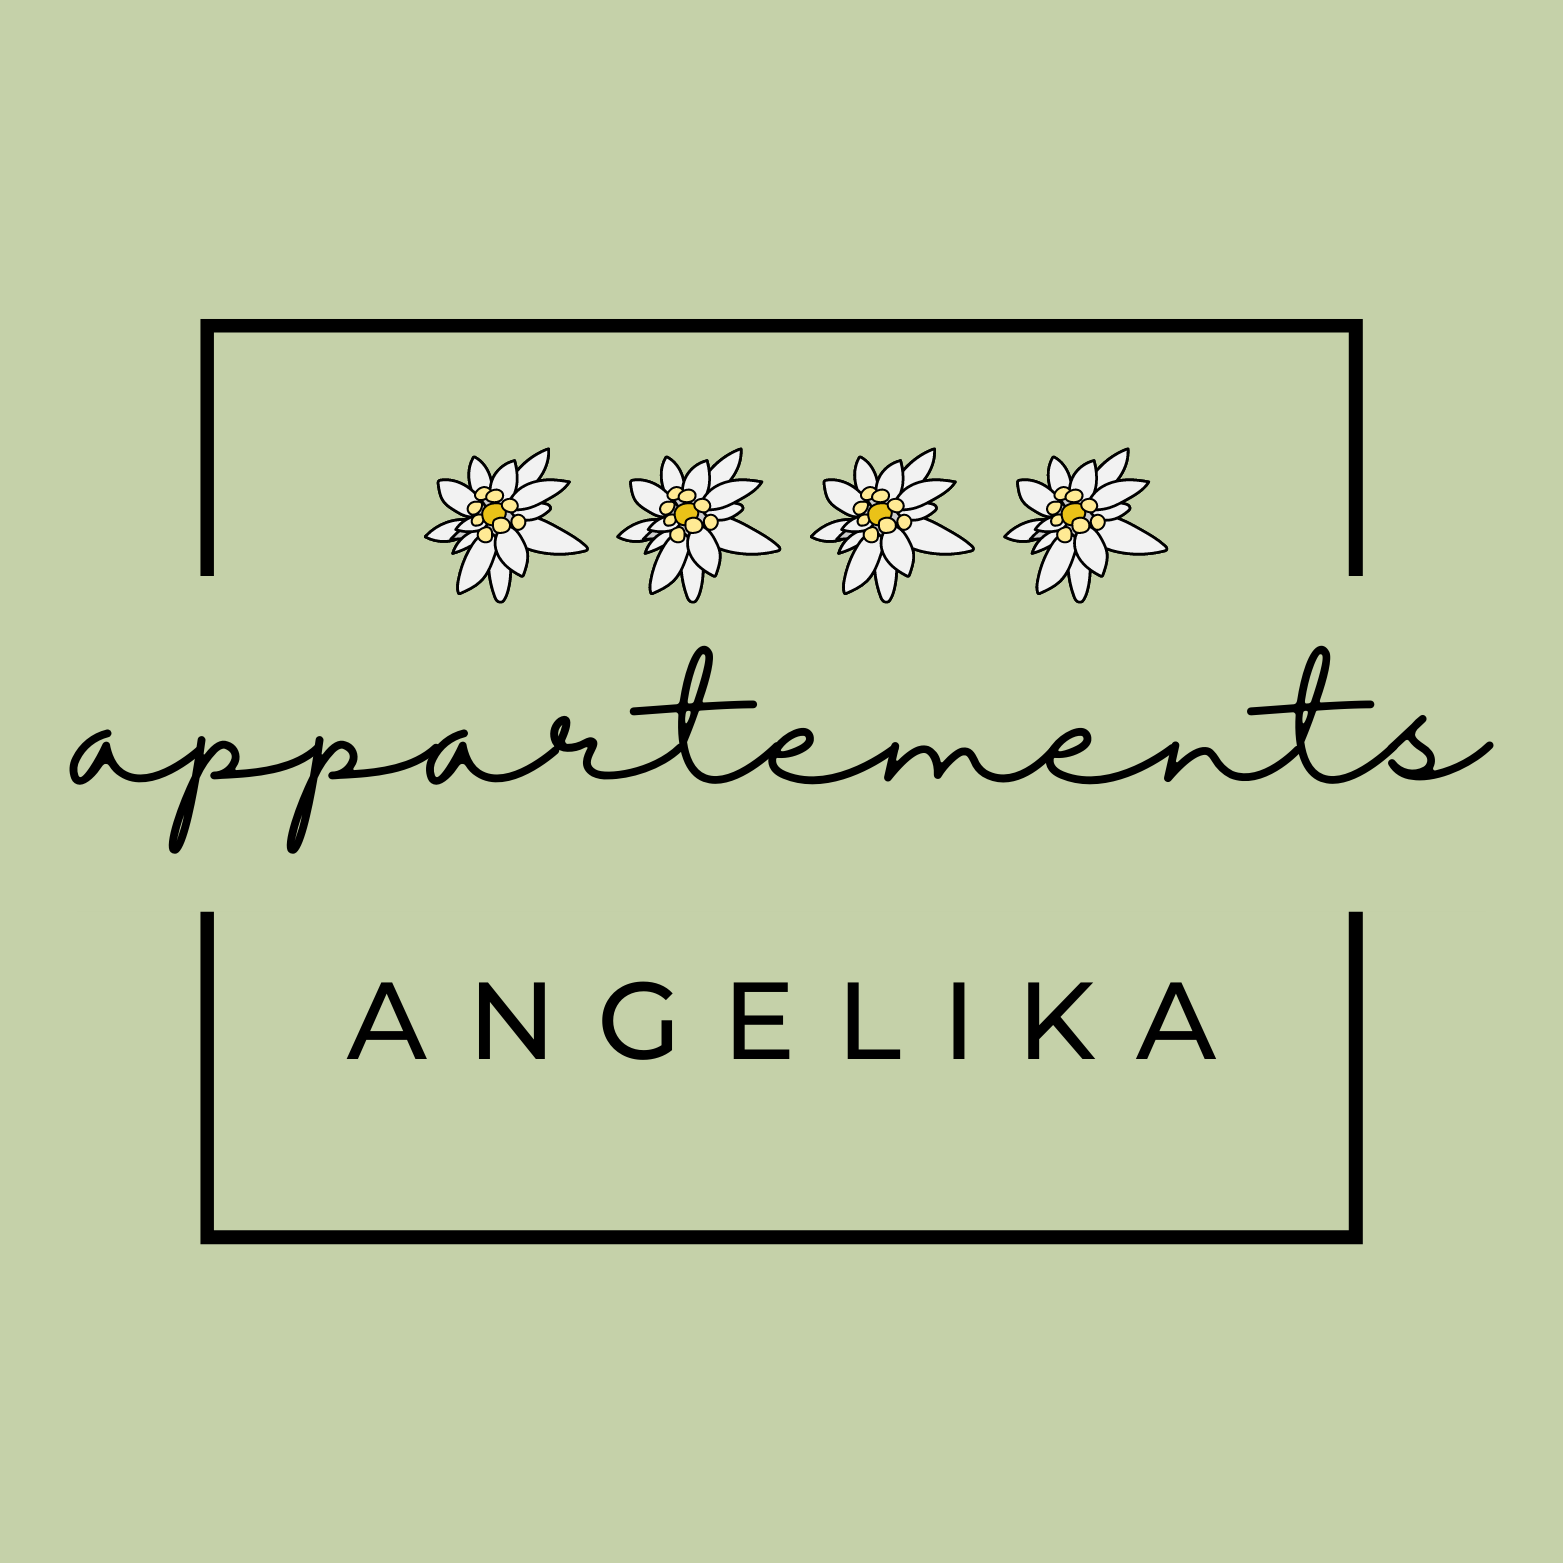  Appartements Angelika Aktivitäten